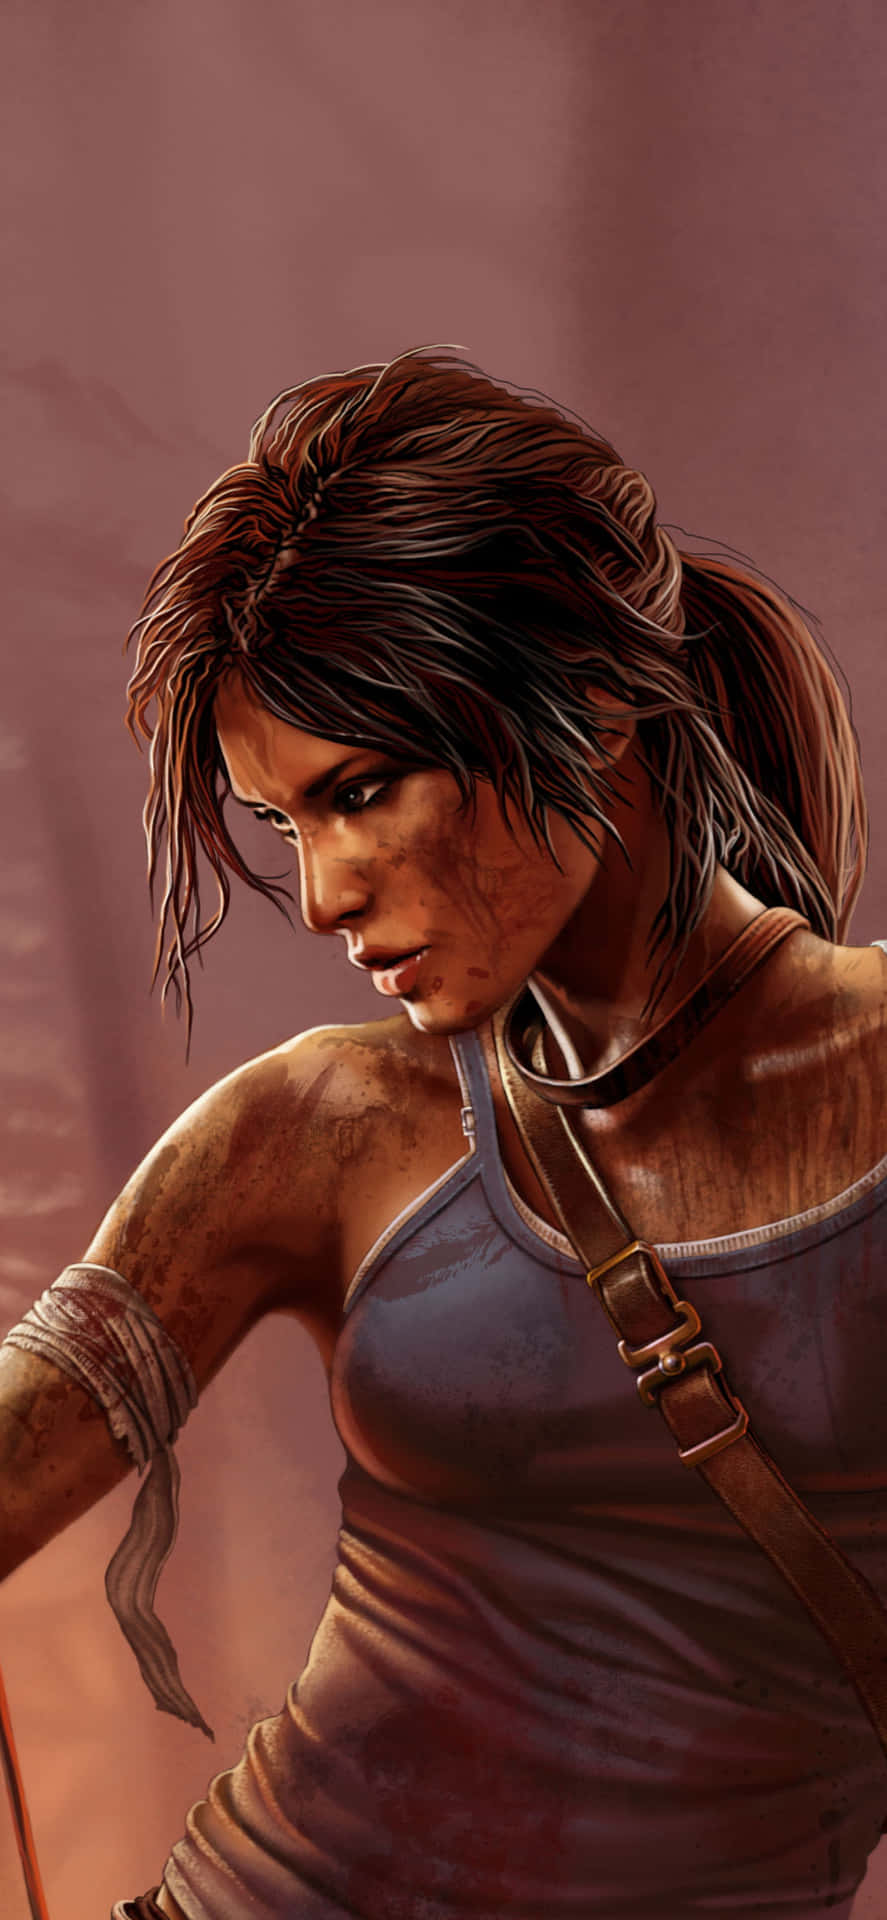 Fondode Pantalla De Android Rise Of The Tomb Raider En El Hombro.